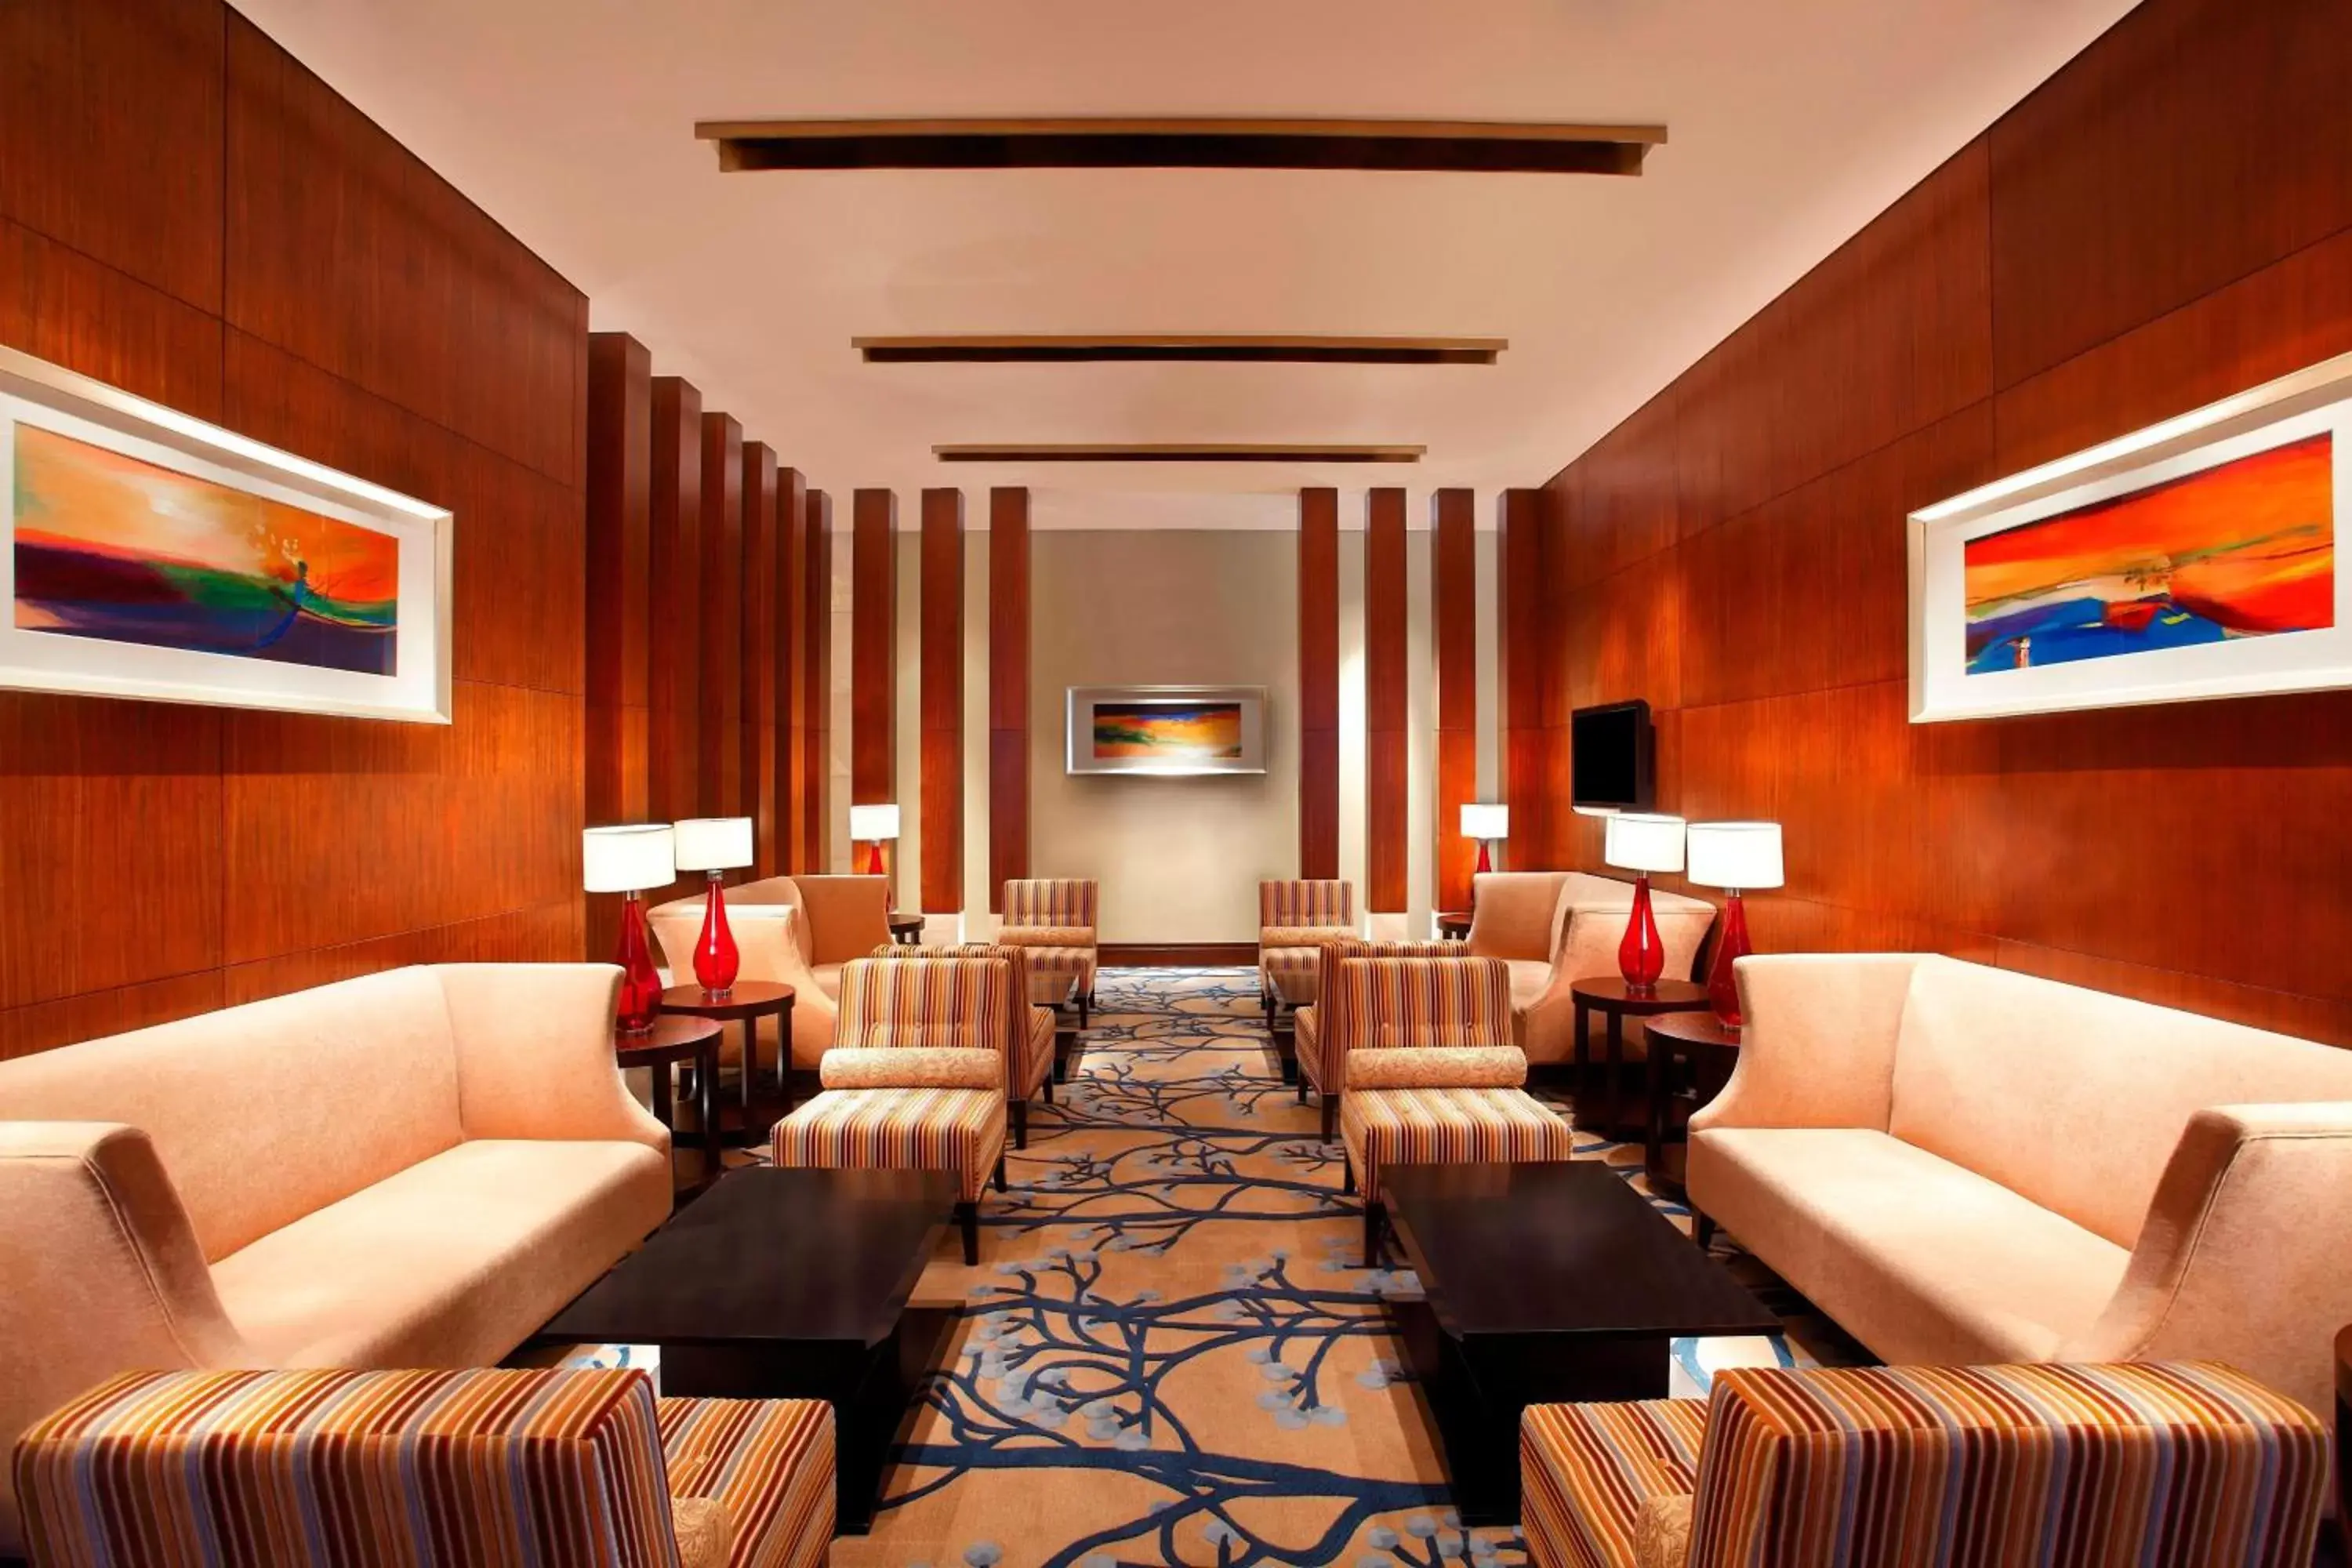 Lounge or bar, Seating Area in Sheraton Guangzhou Hotel